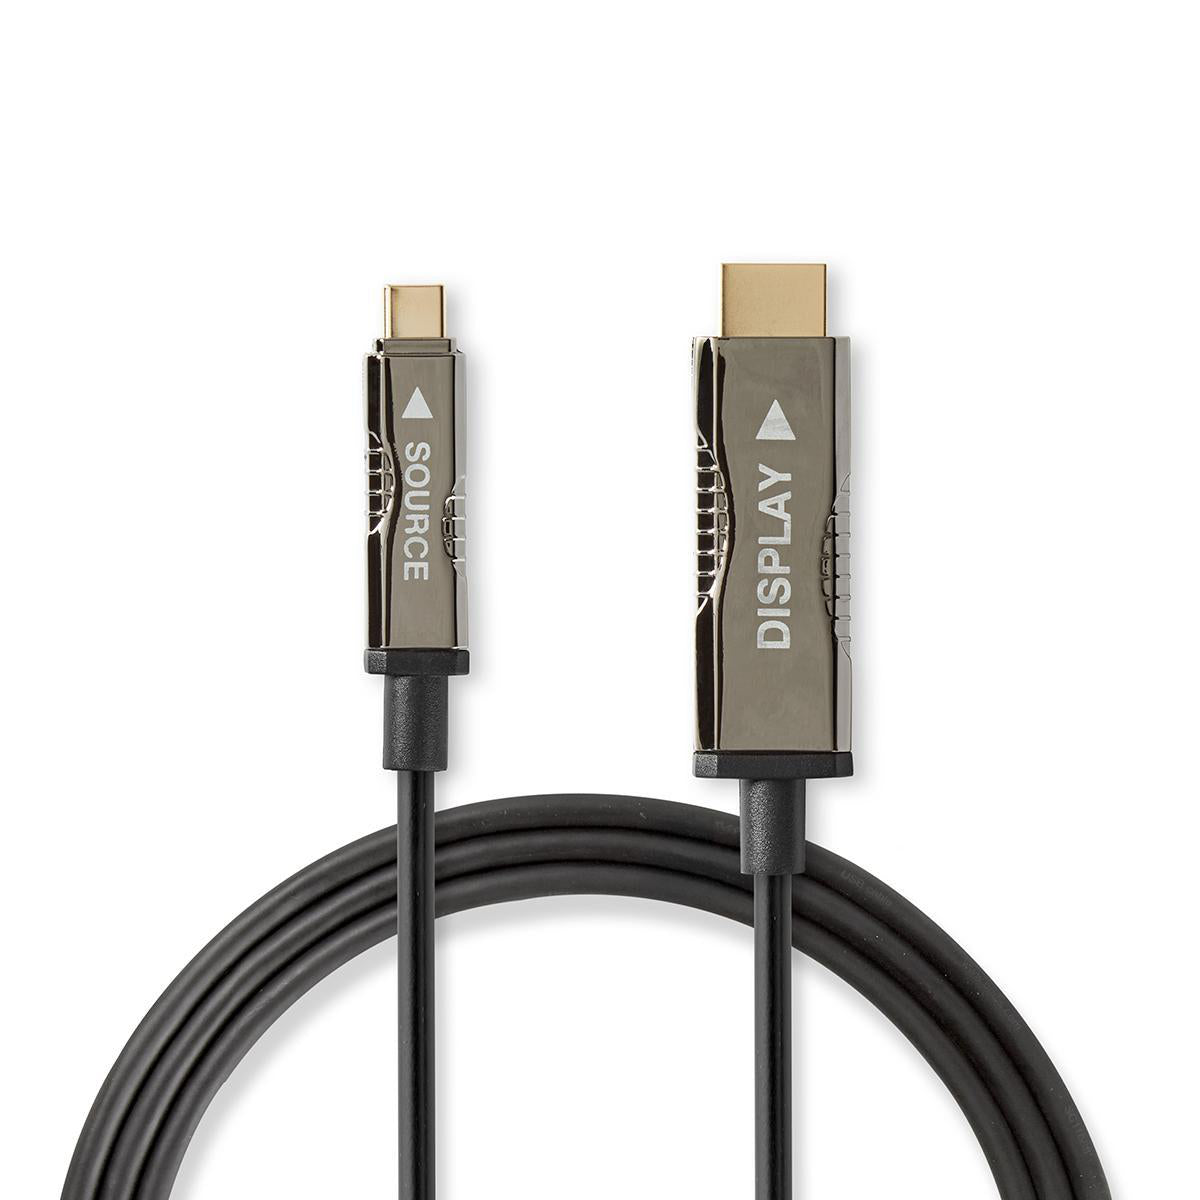 optische USB-Kabel (aktiv) | USB-C™ Stecker | HDMI™ Stecker | 18 Gbps | 50.0 m | Rund | PVC | Schwarz | Kartonverpackung